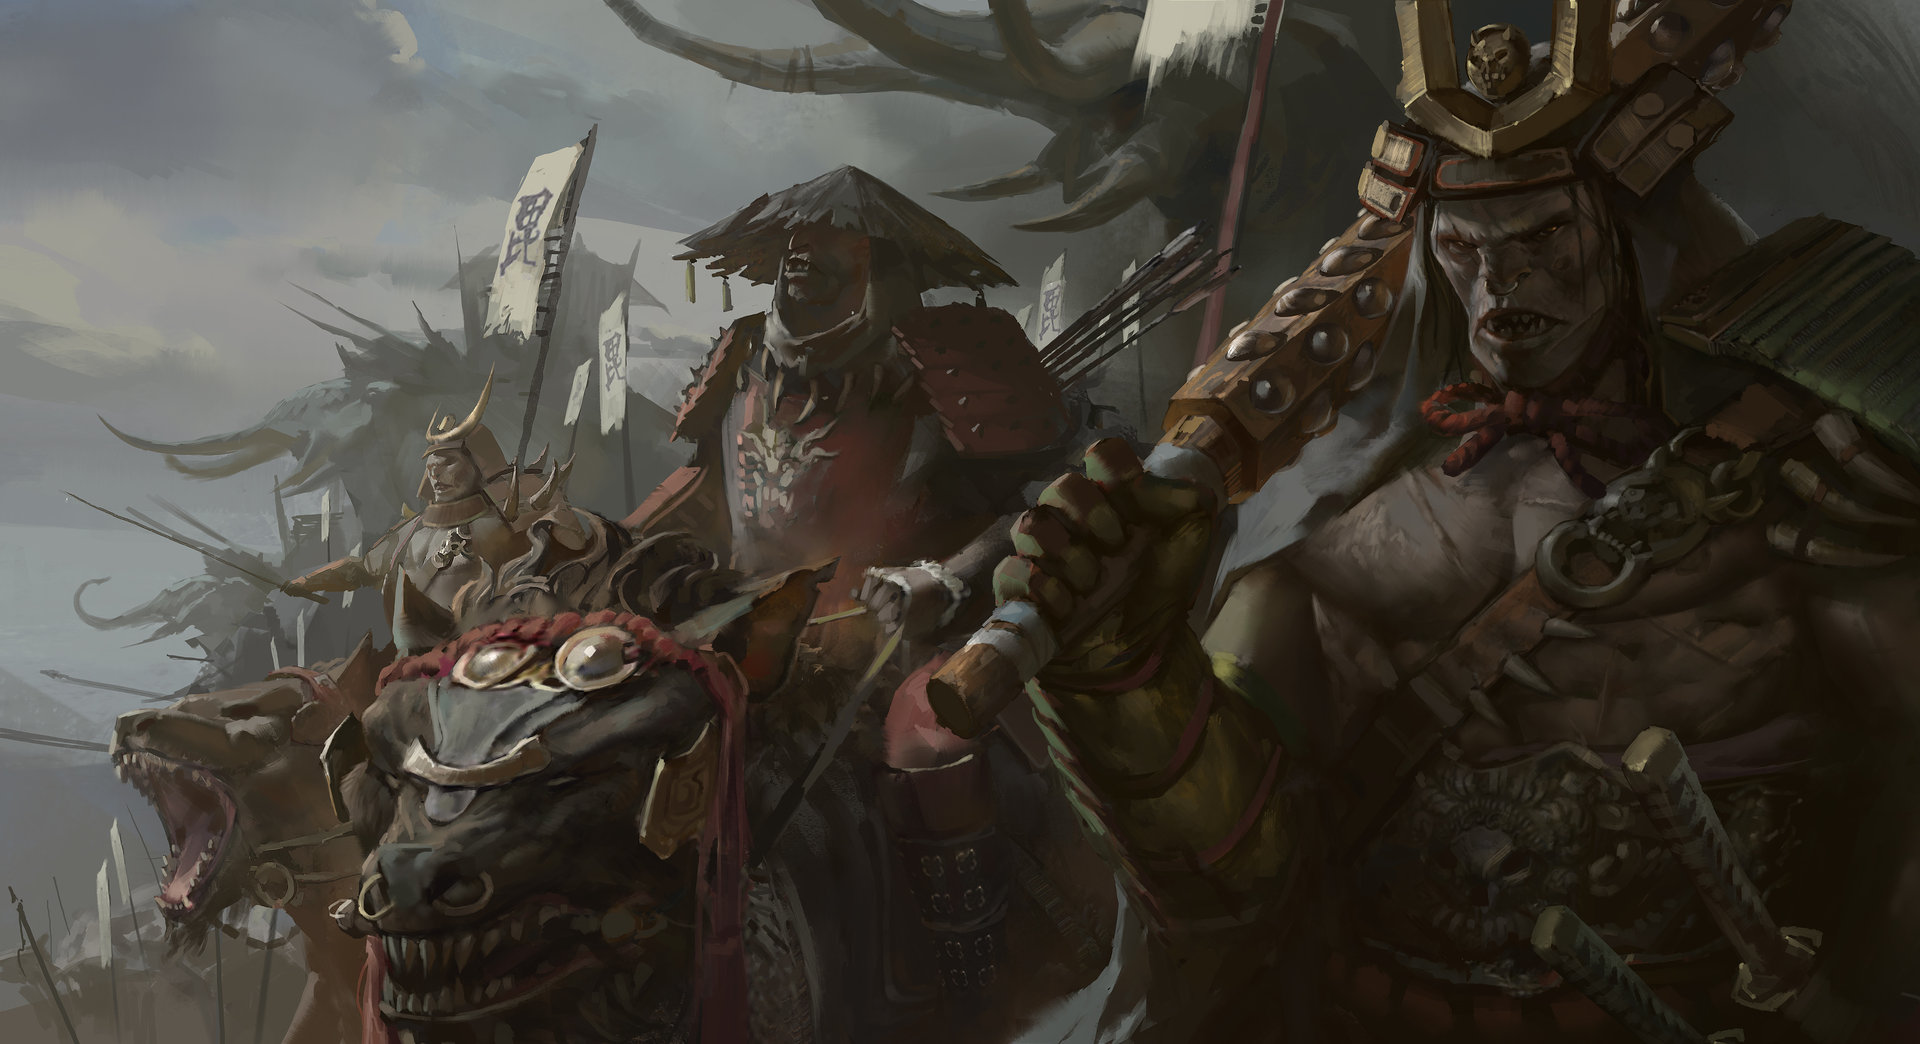 Samurai Orcs by Jason Kang